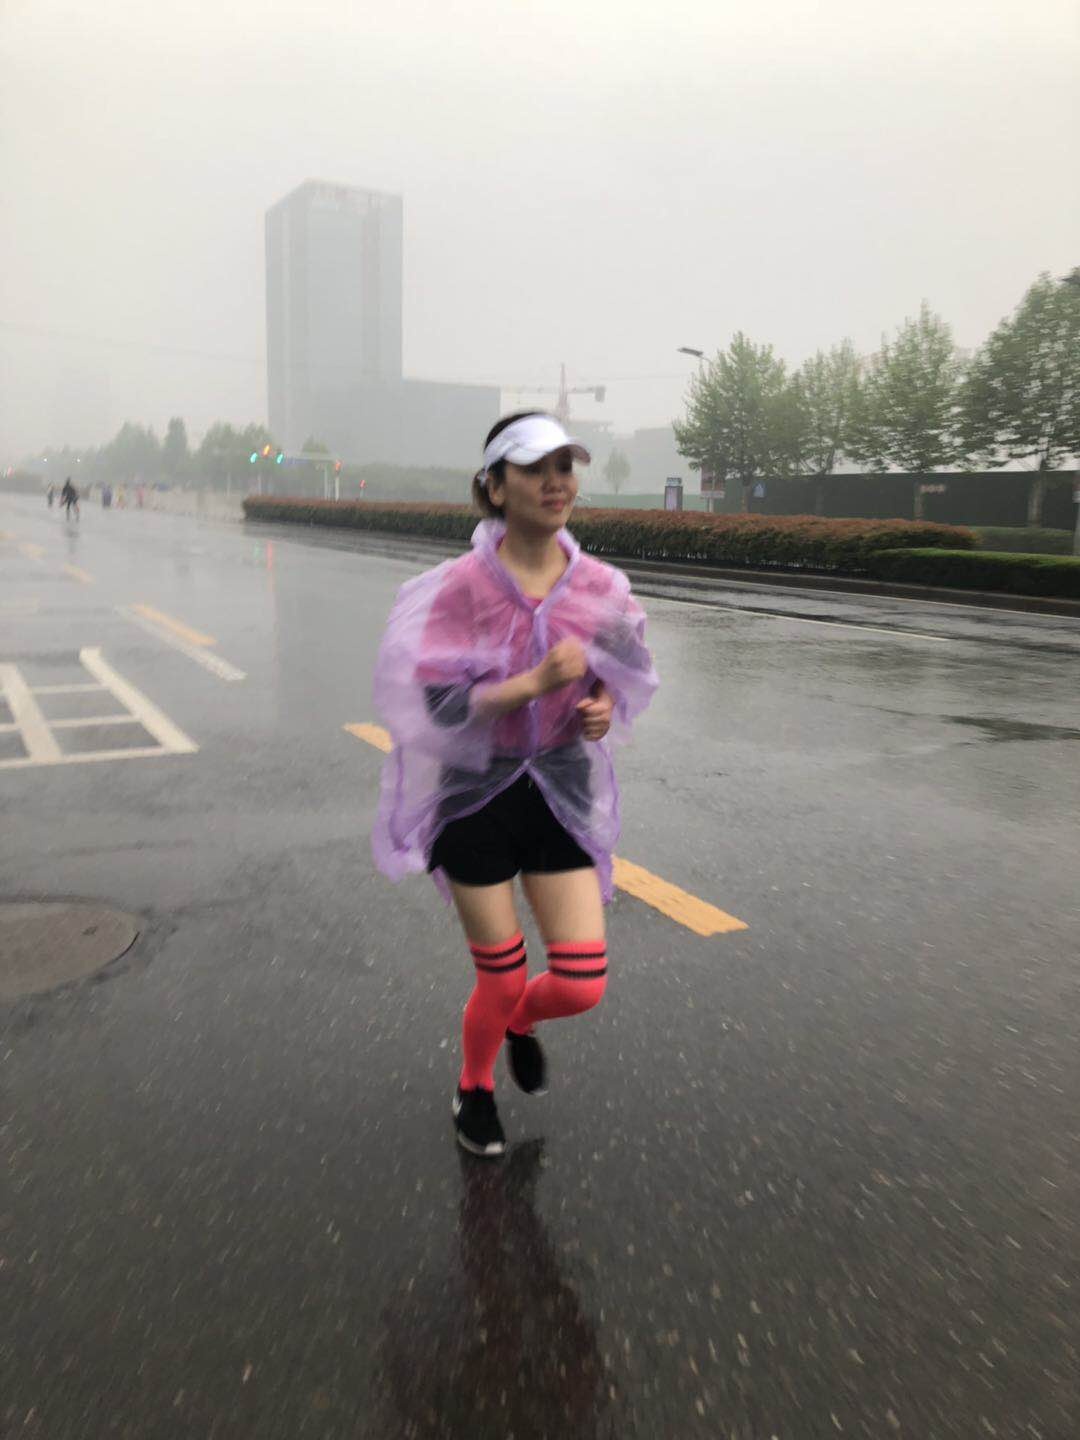 华山腺肌症保宫粉跑团现身2019年郑州国际女子半程马拉松